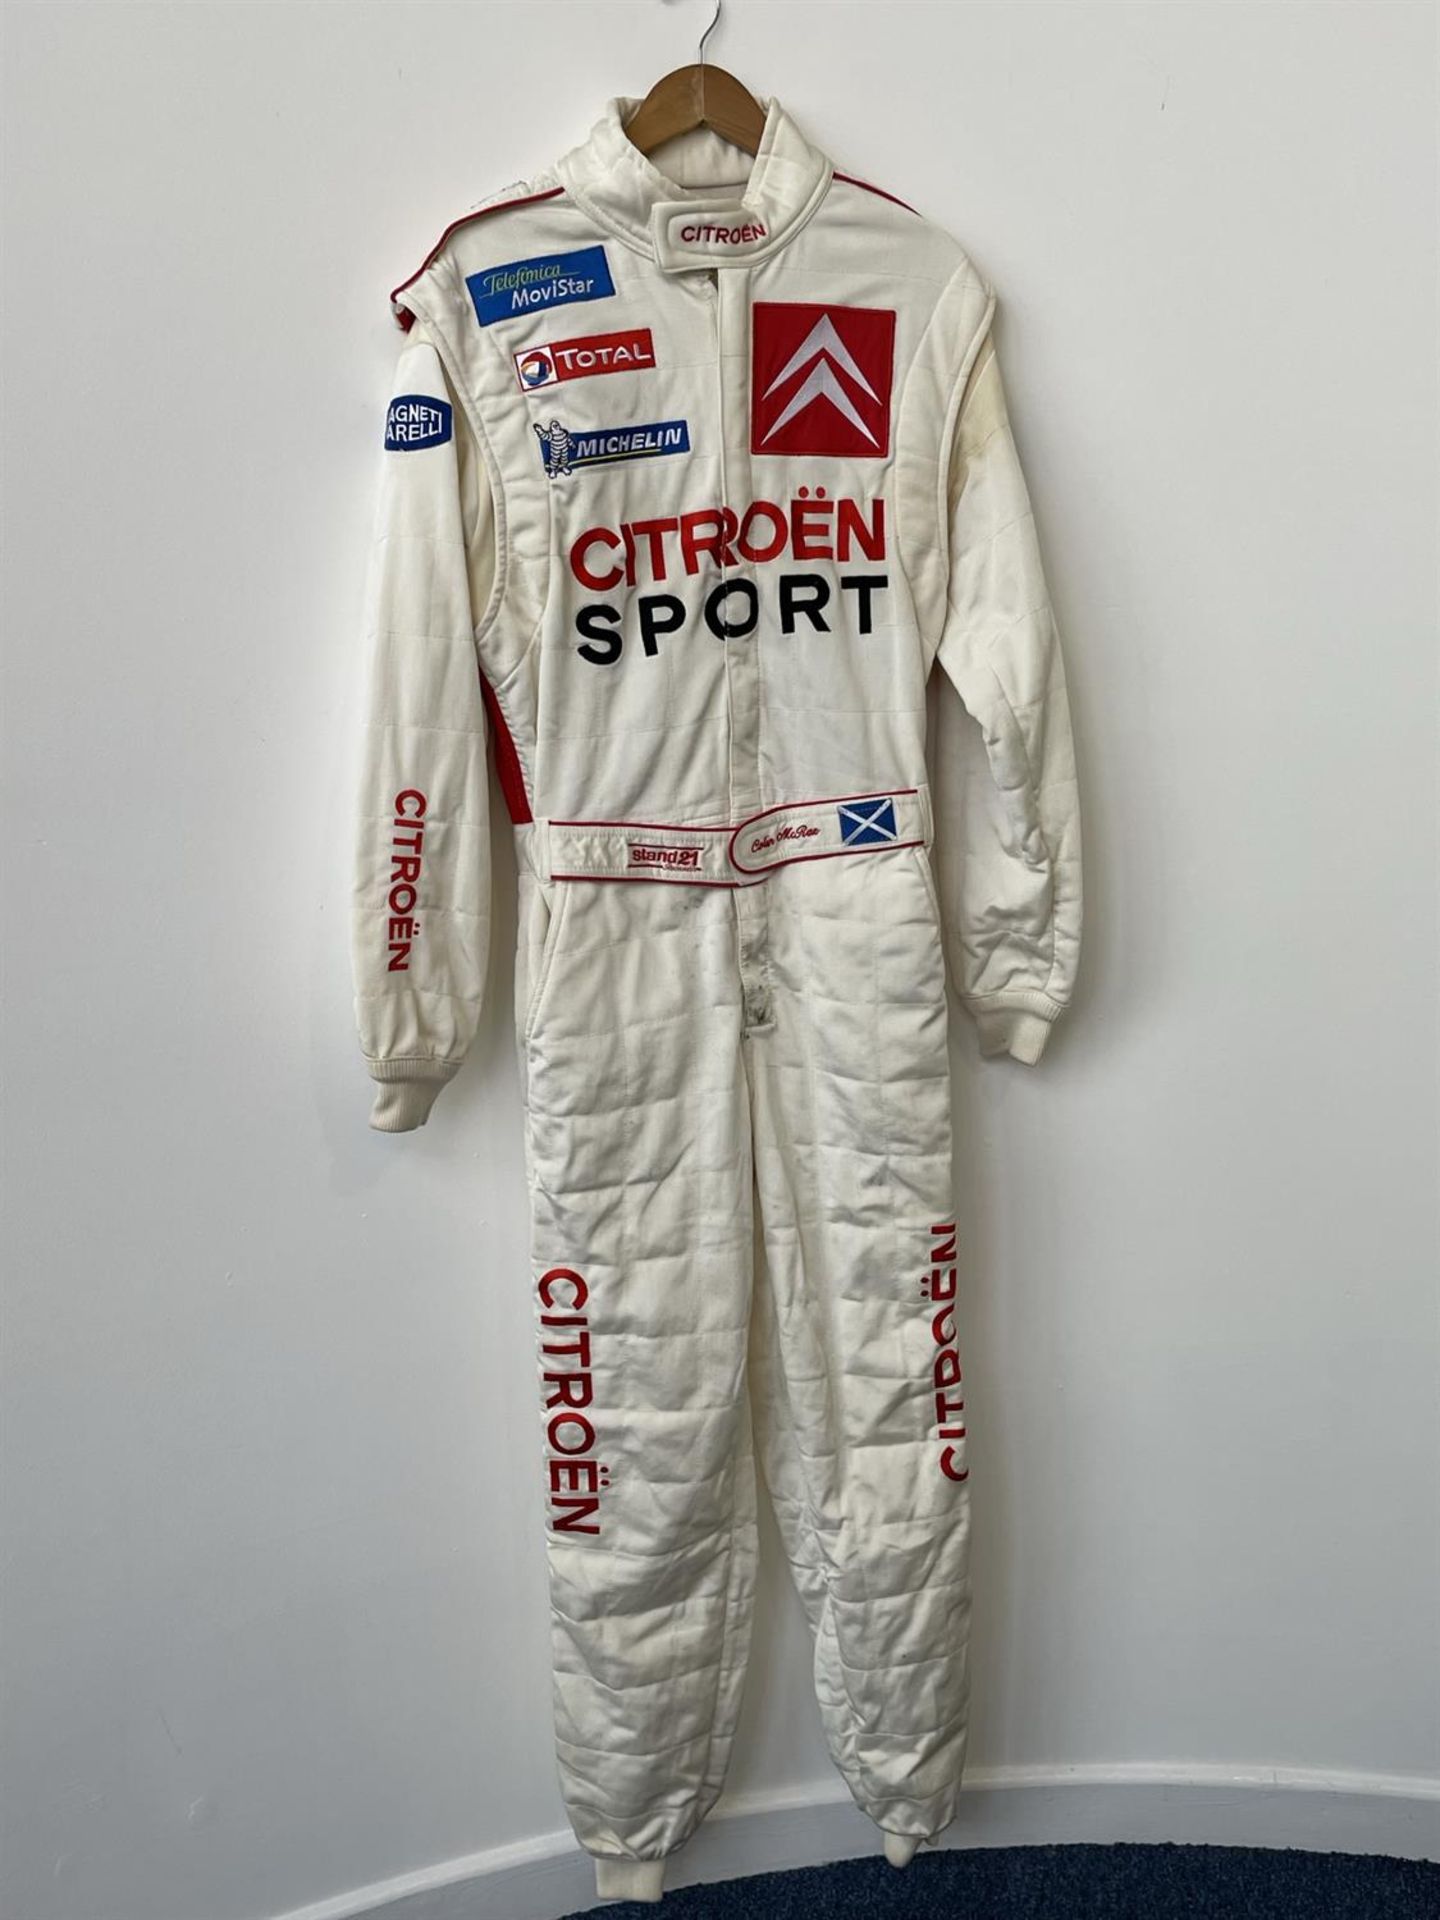 Colin McRae's 2003 Citroen Race Suit - Image 2 of 5